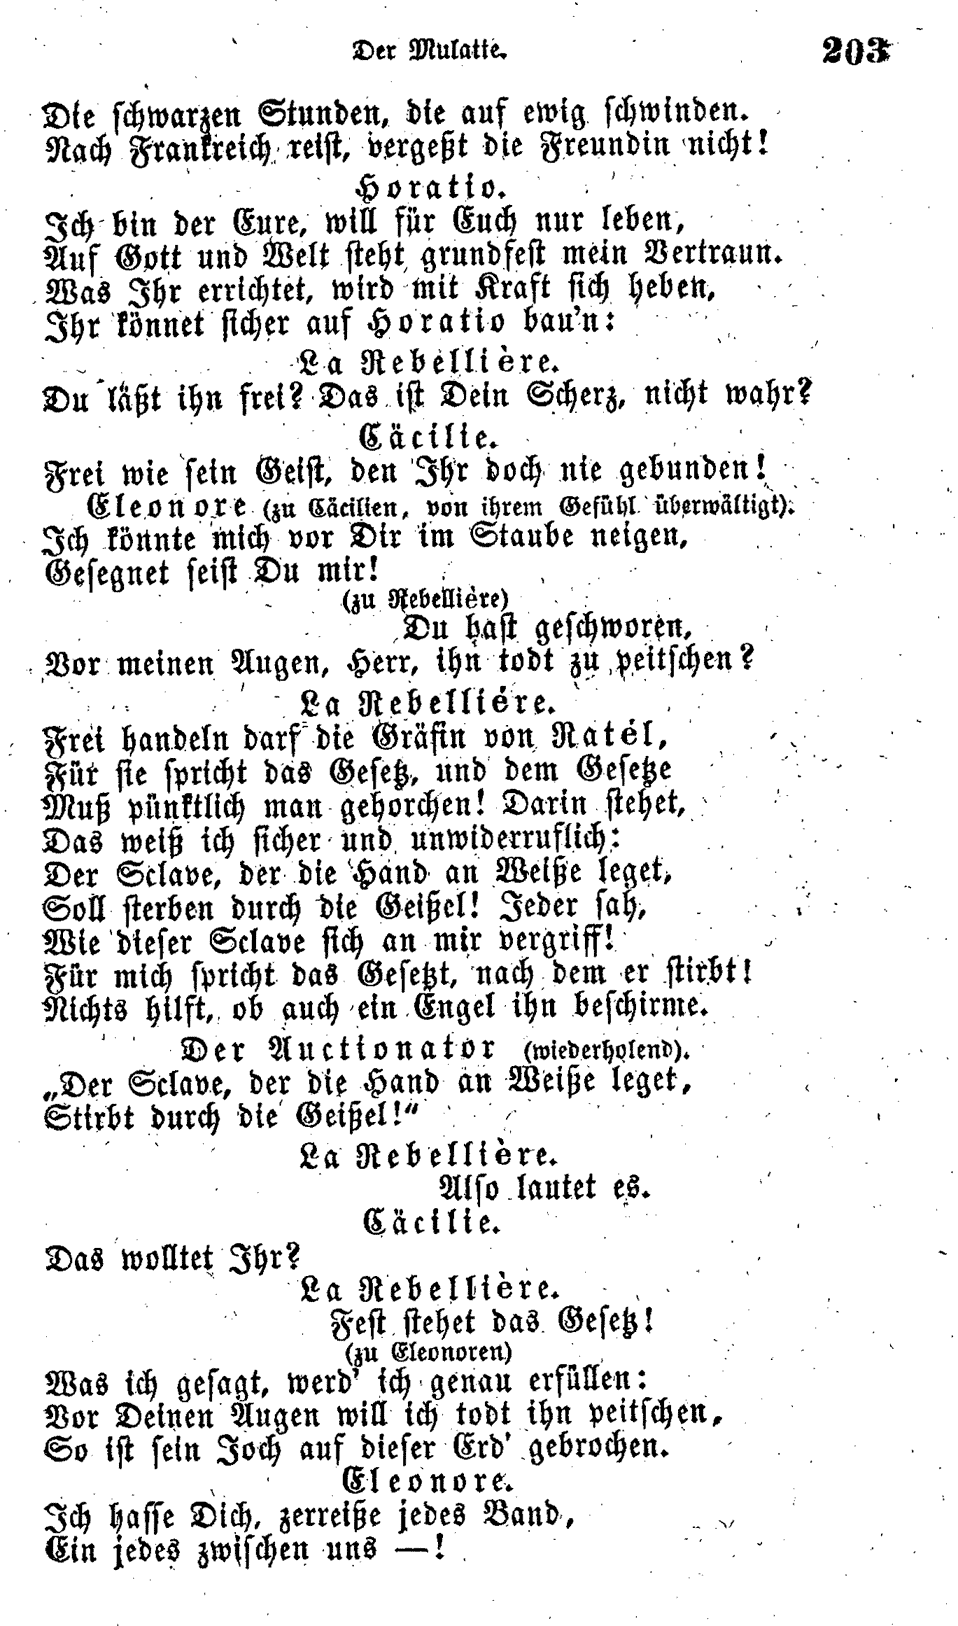 H.C. Andersen: Der Mulatte page  203